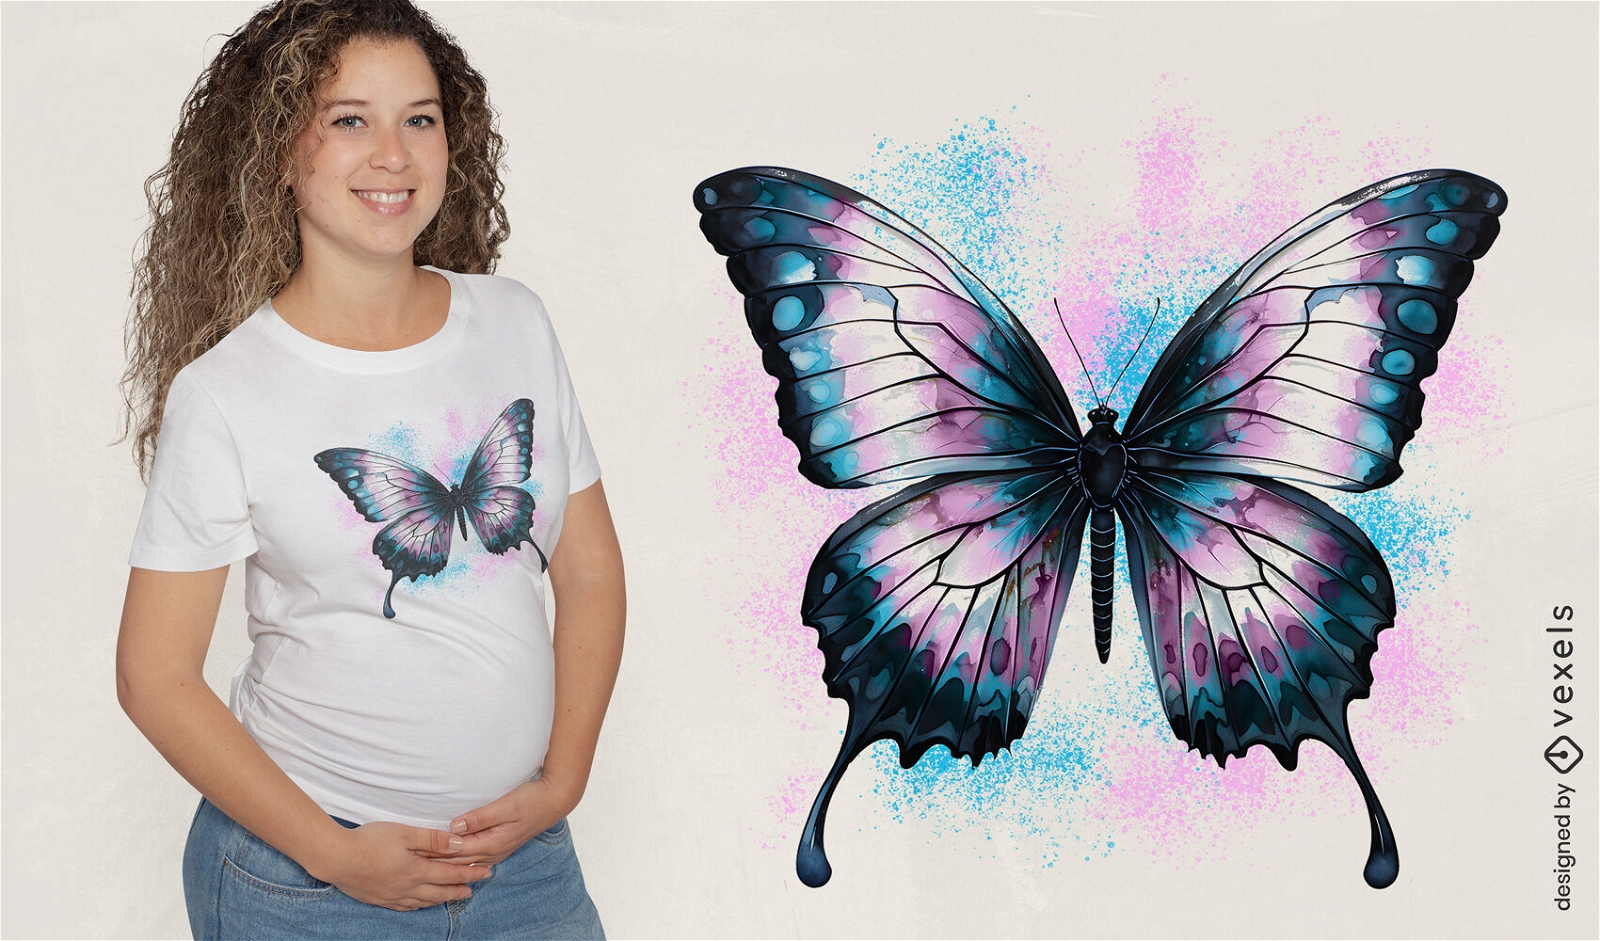 Butterfly trans flag t-shirt design